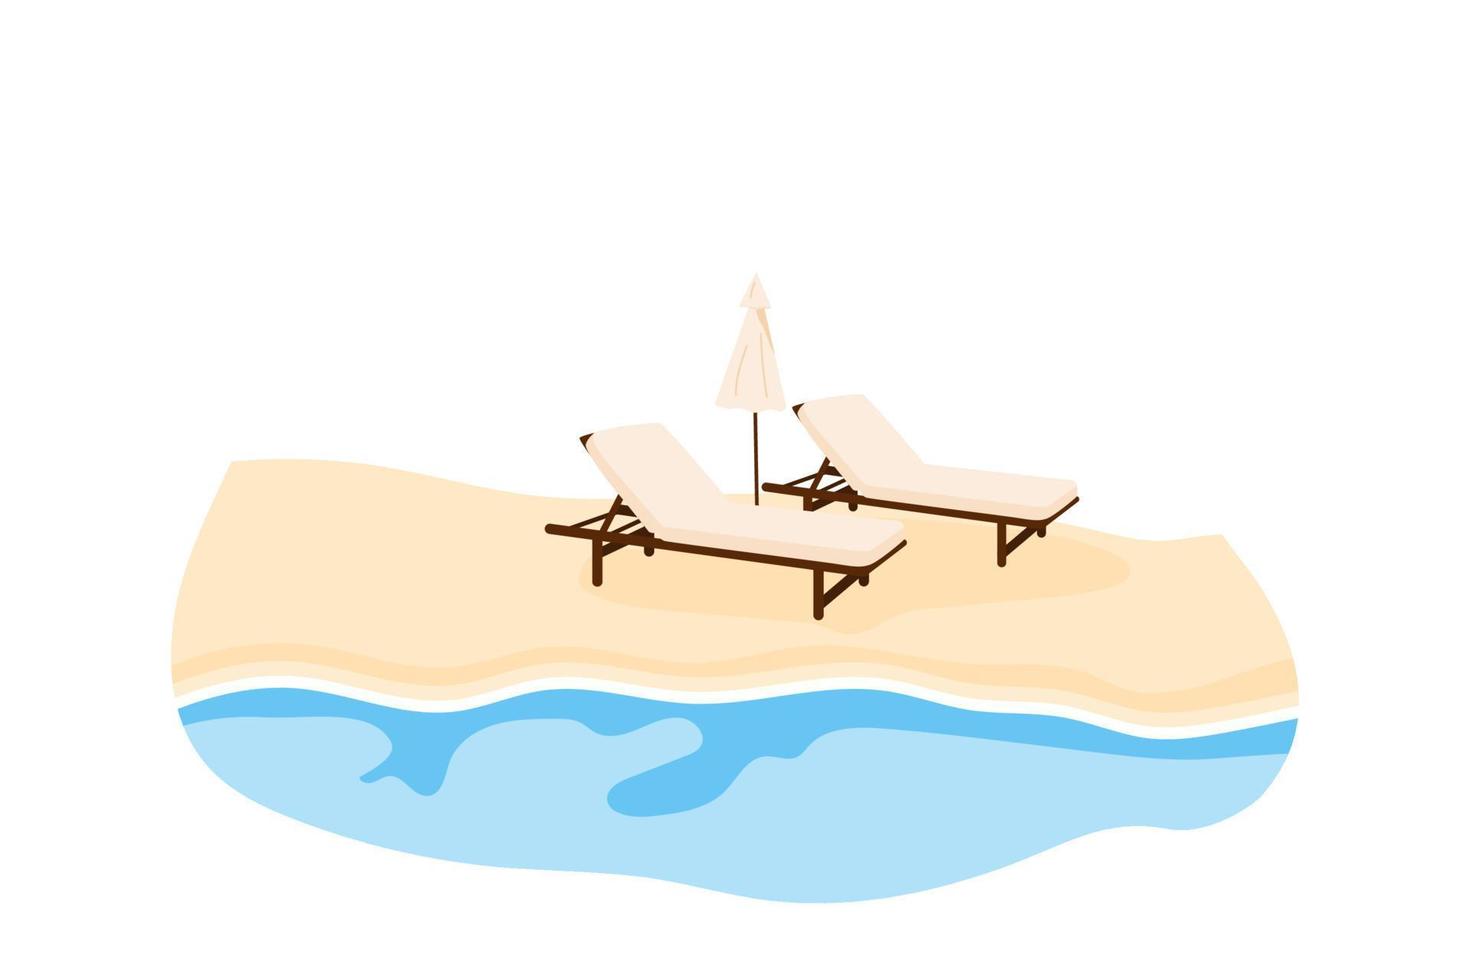 luxuriöser Sandstrand. Seebad mit zwei Liegestühlen und Sonnenschirm. Meeresküste mit Sonnenliegen im Sommer. Vektor-Illustration isoliert auf weißem Hintergrund vektor